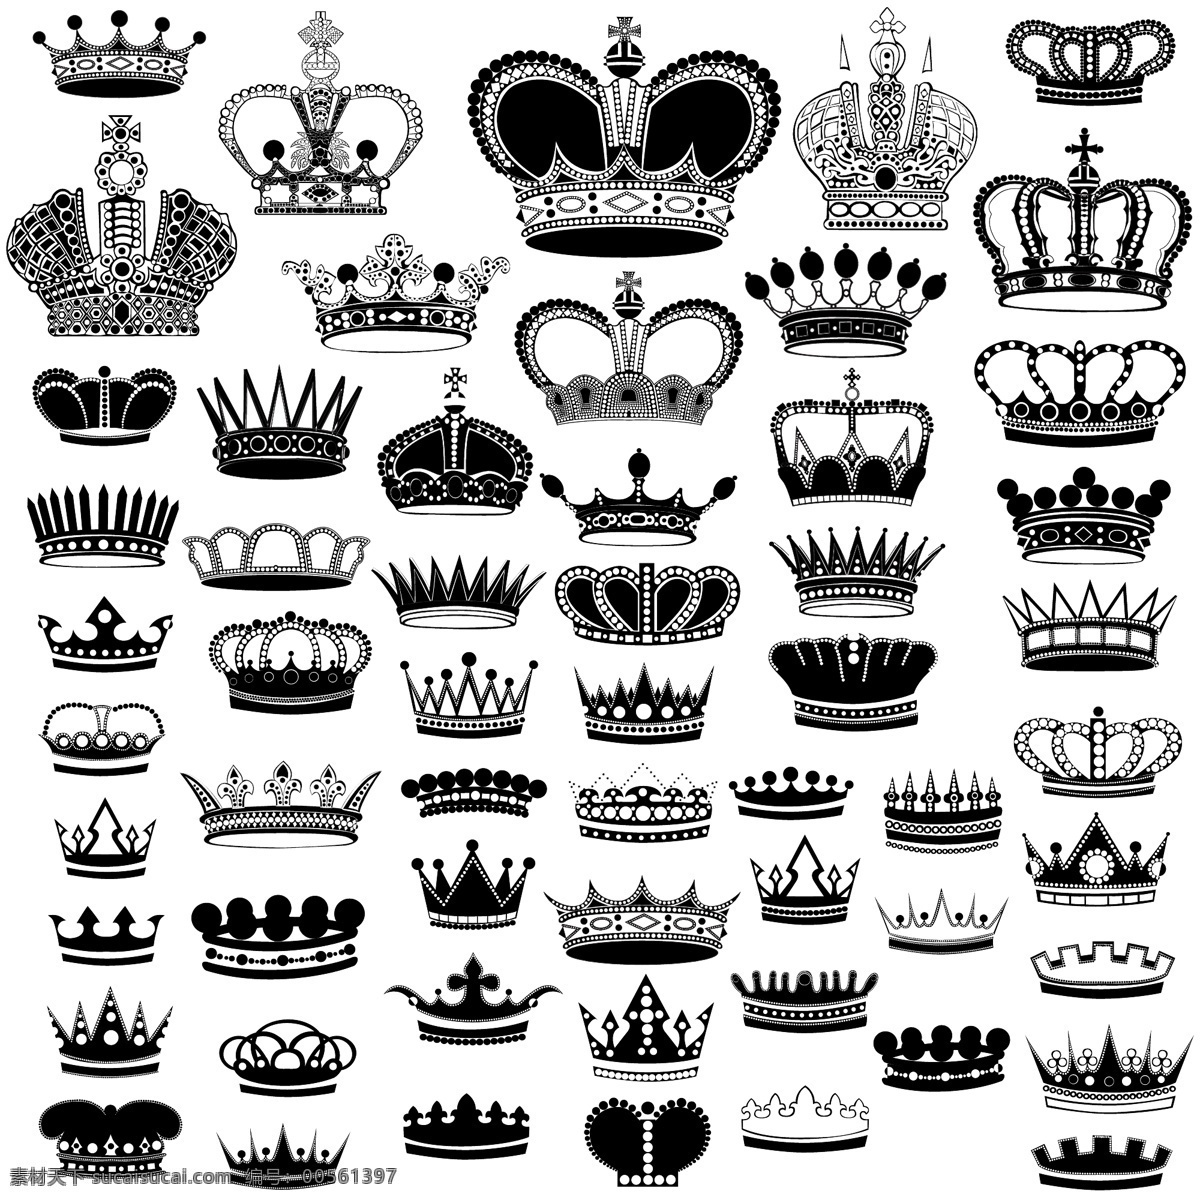 皇冠图标 皇冠素材 皇冠 卡通皇冠 可爱皇冠 标志图标 其他图标